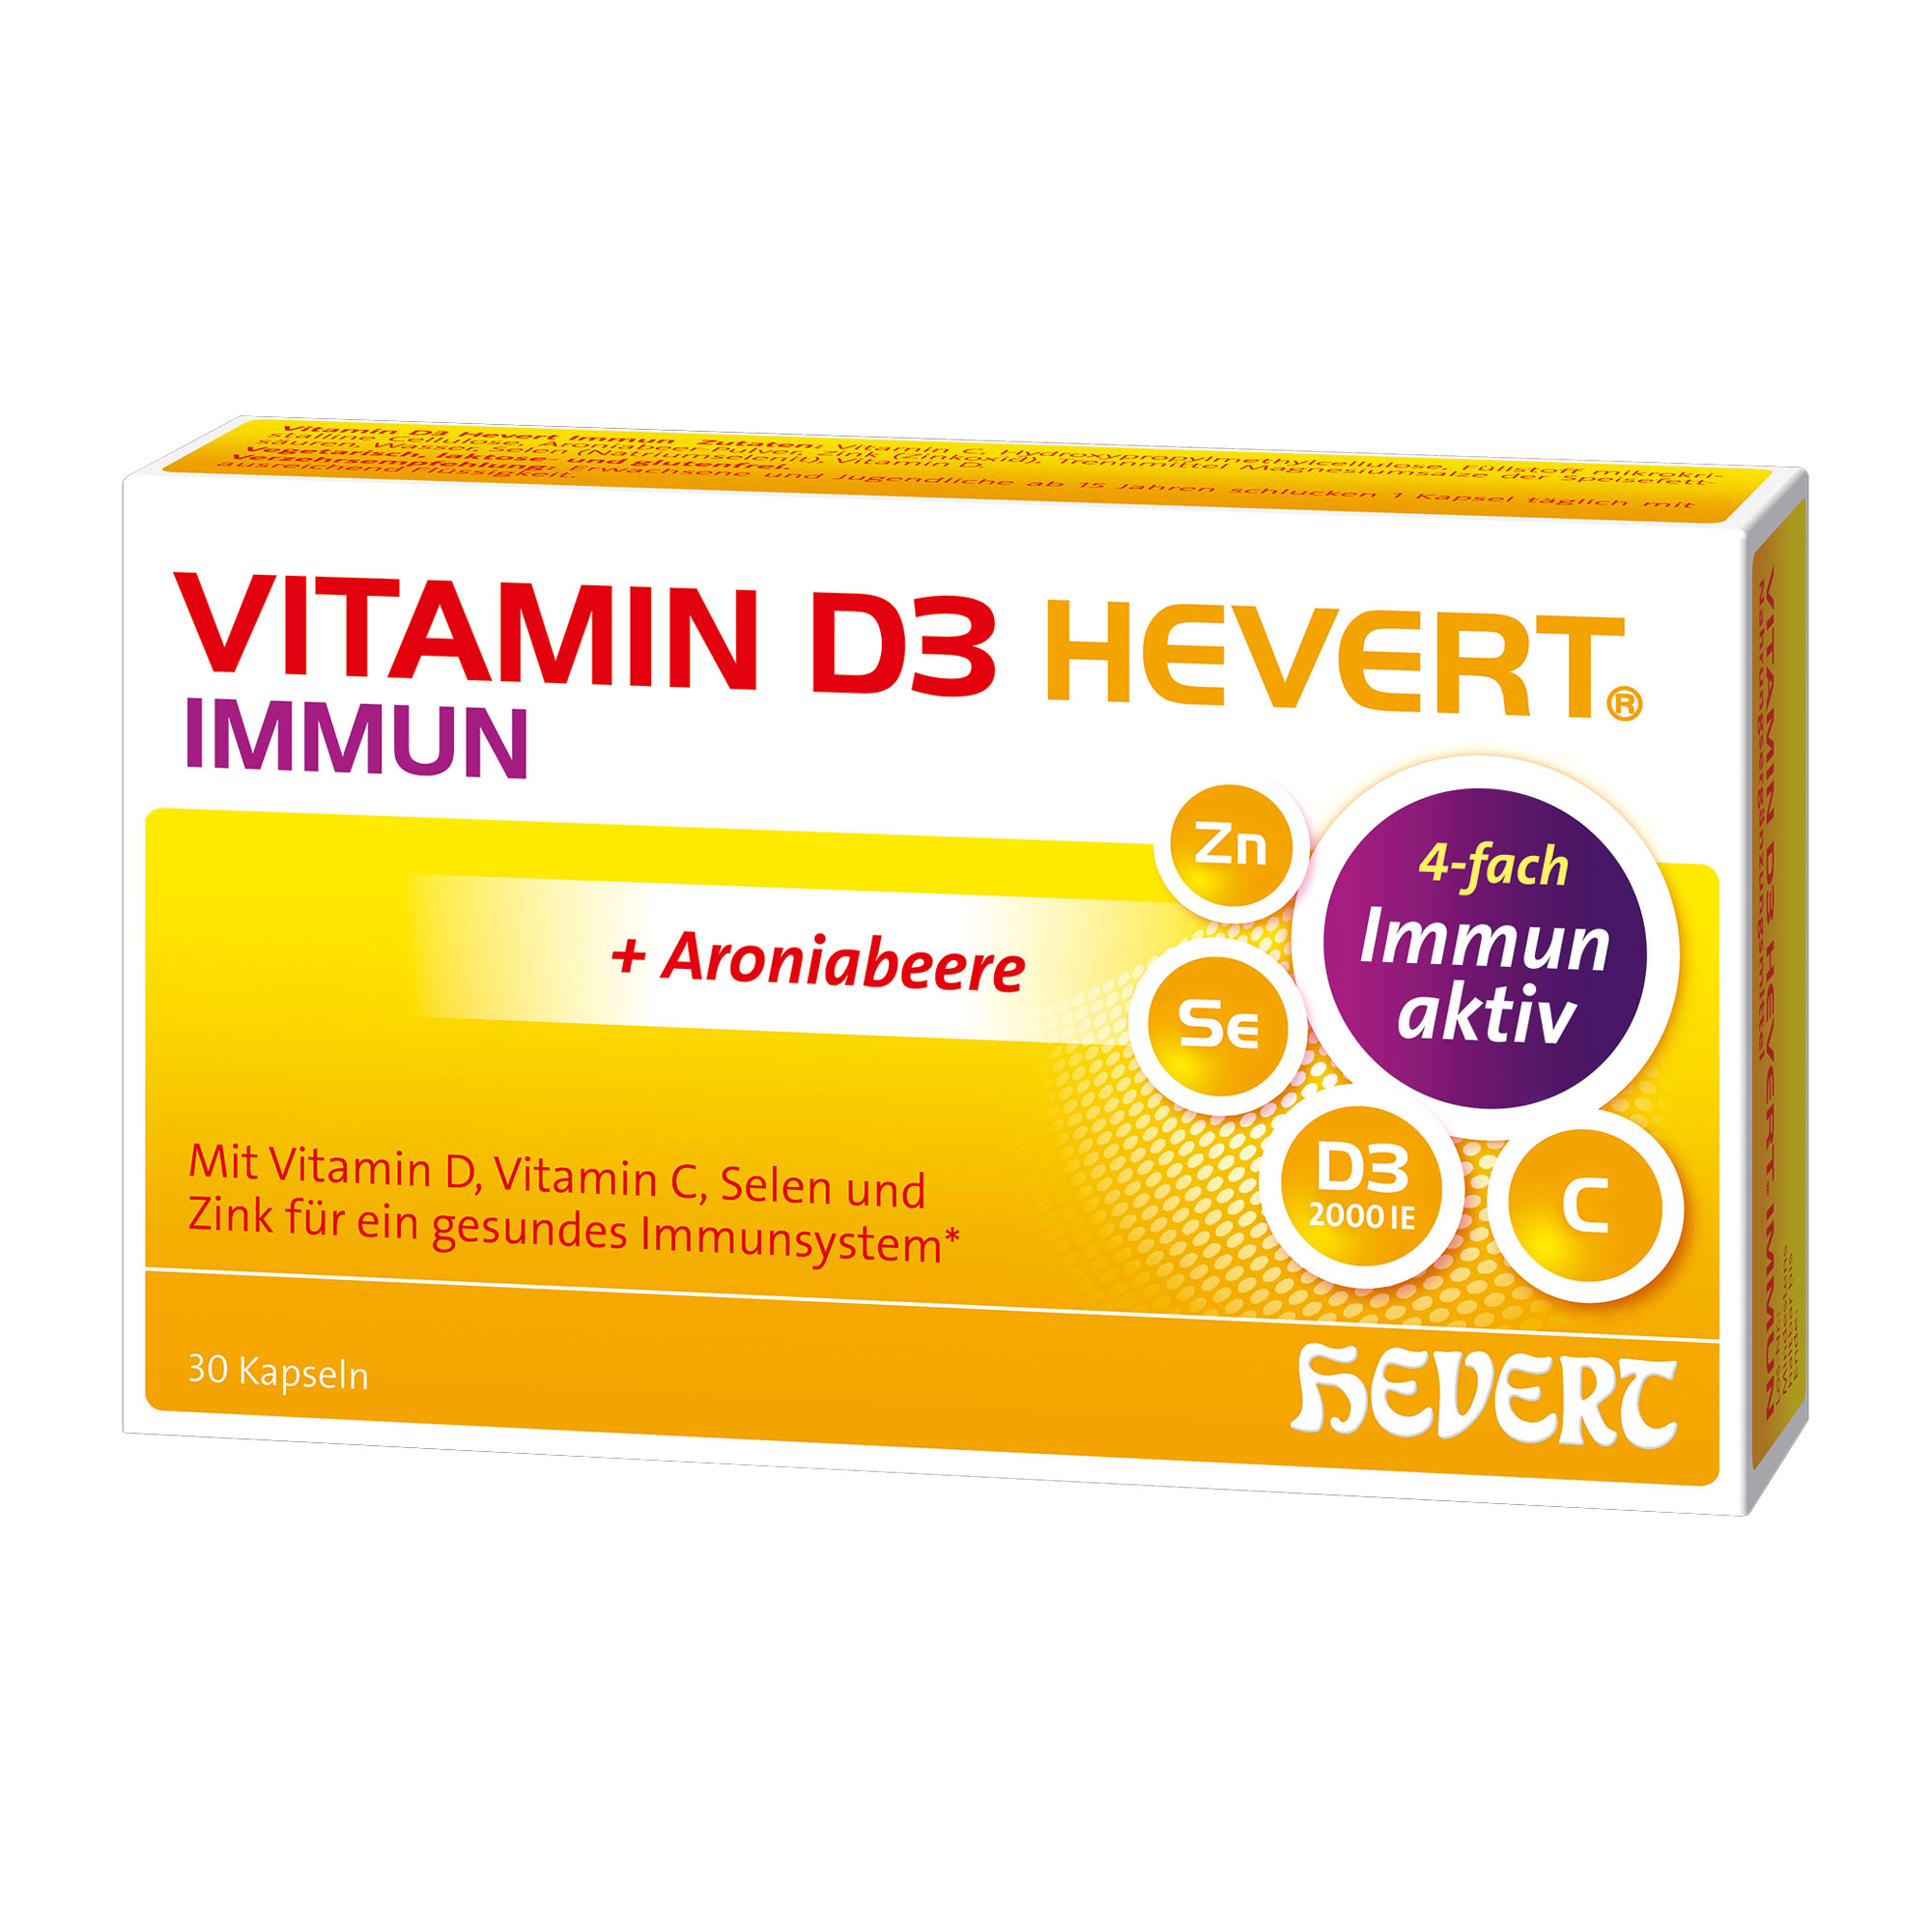 Nahrungsergänzungsmittel mit Vitamin D, Vitamin C, Selen und Zink - plus Aroniabeere. Ab 15 Jahren geeignet.